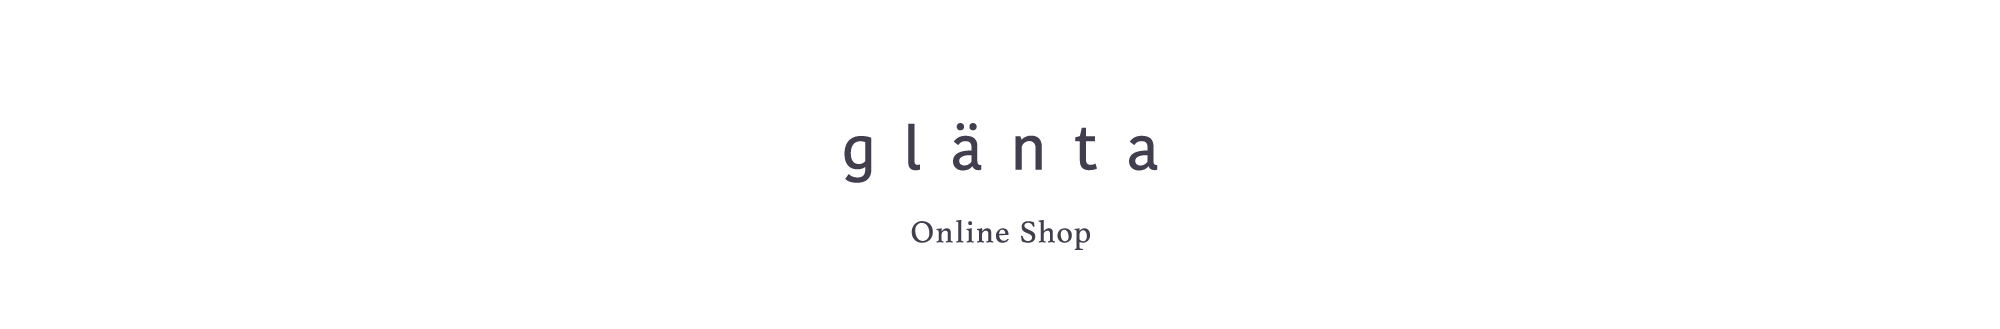 glänta 〈花と葉 グレンタ〉Online Shop